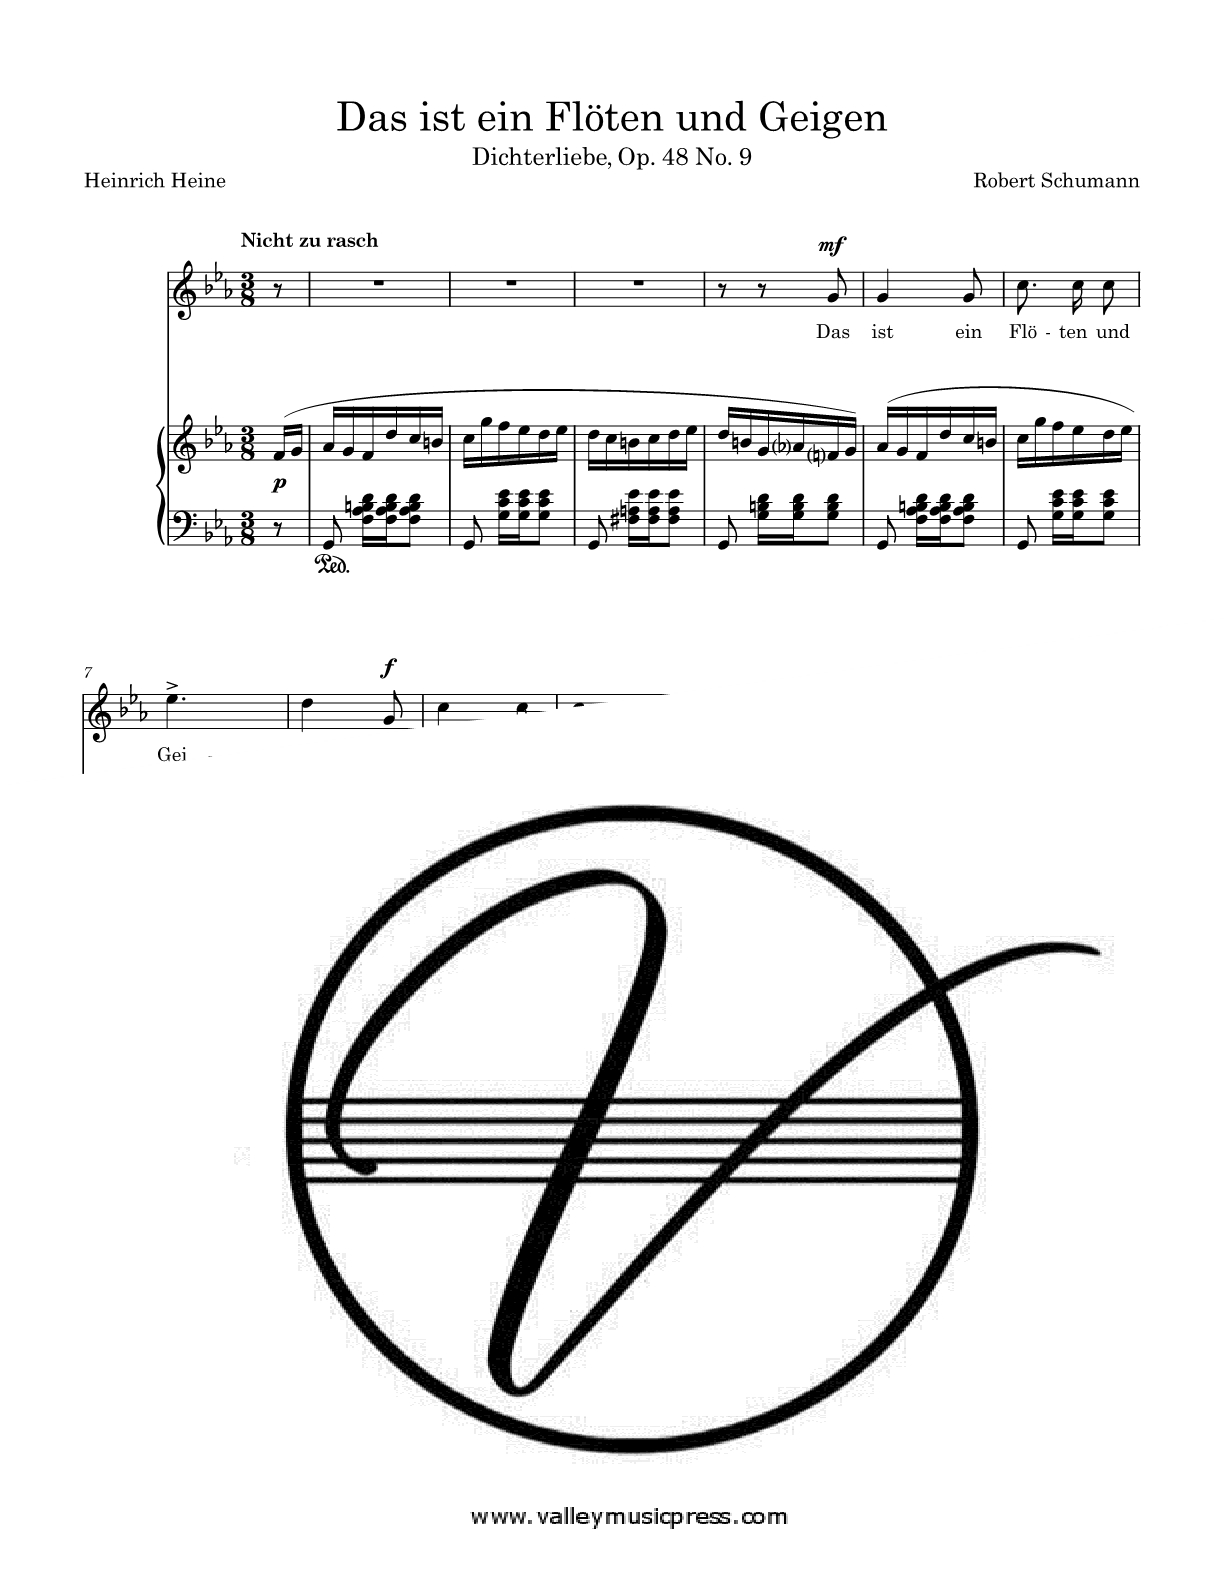 Schumann - Das ist ein Floten und Geigen Op. 48 No. 9 (Voice) - Click Image to Close